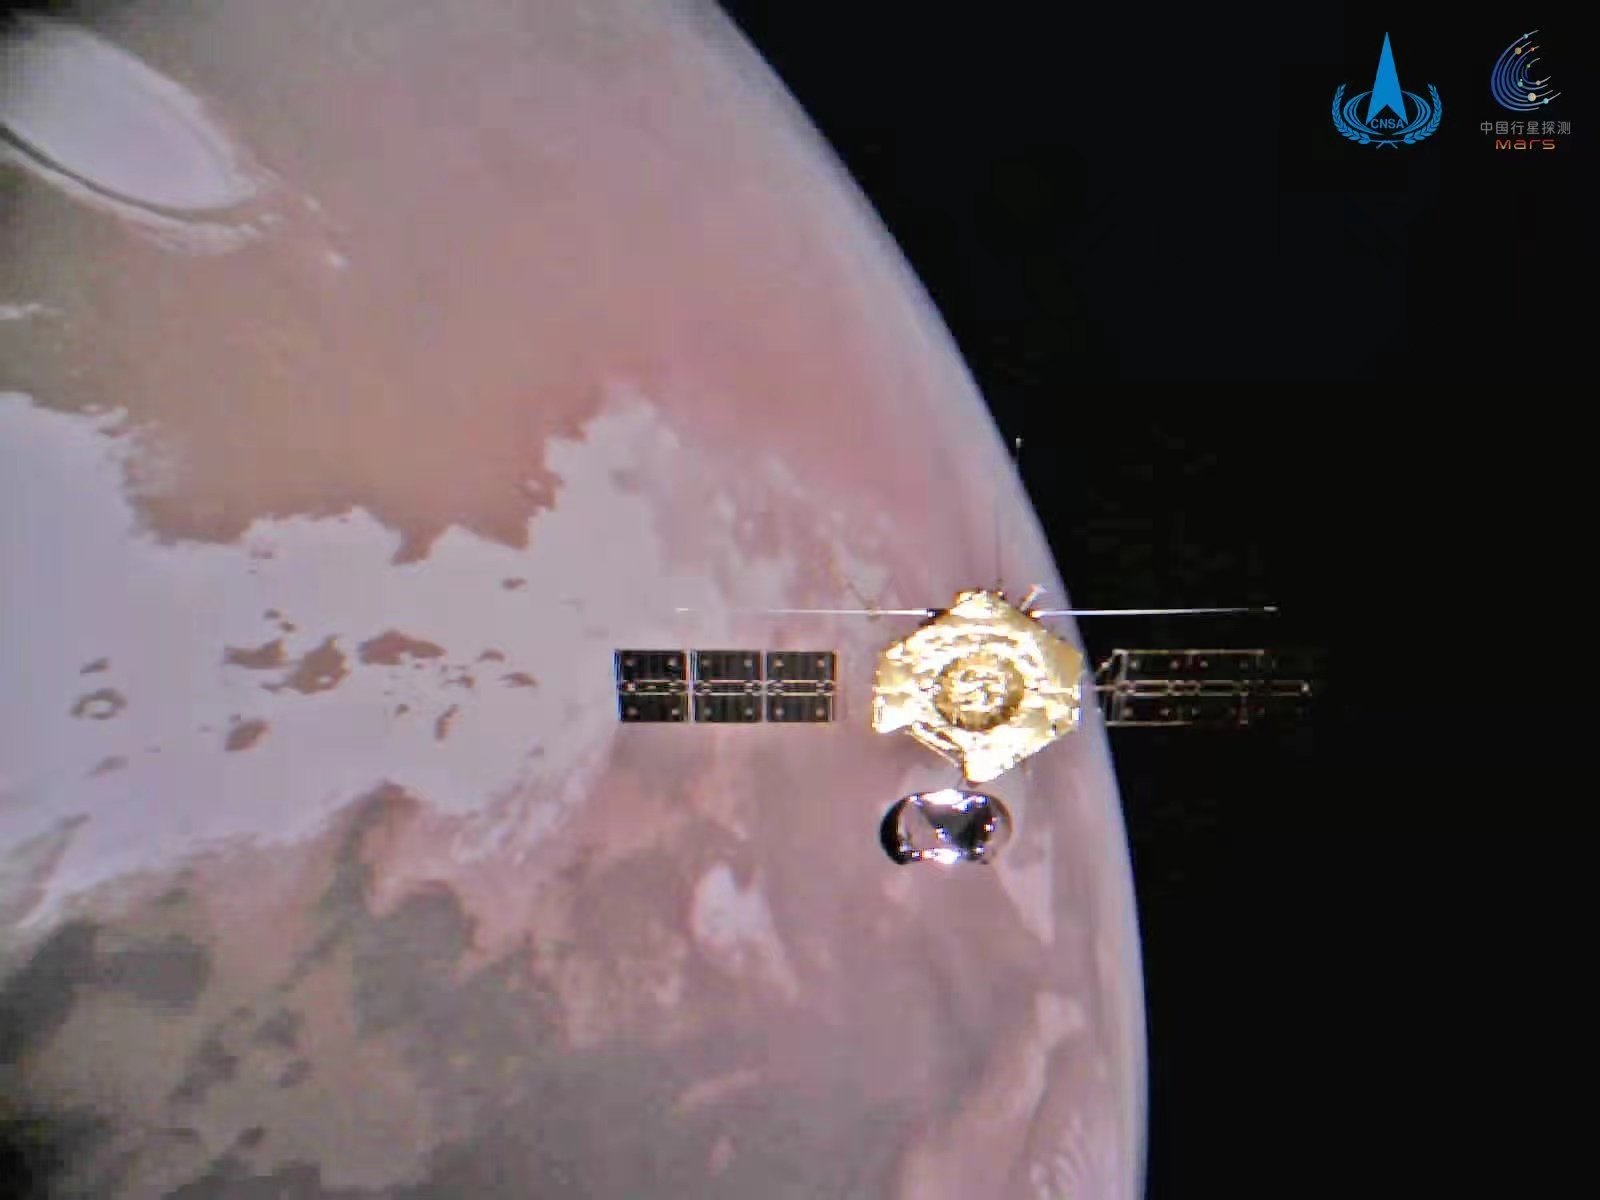 The Tianwen-1 orbiter seen orbiting above Mars. Photo: Xinhua